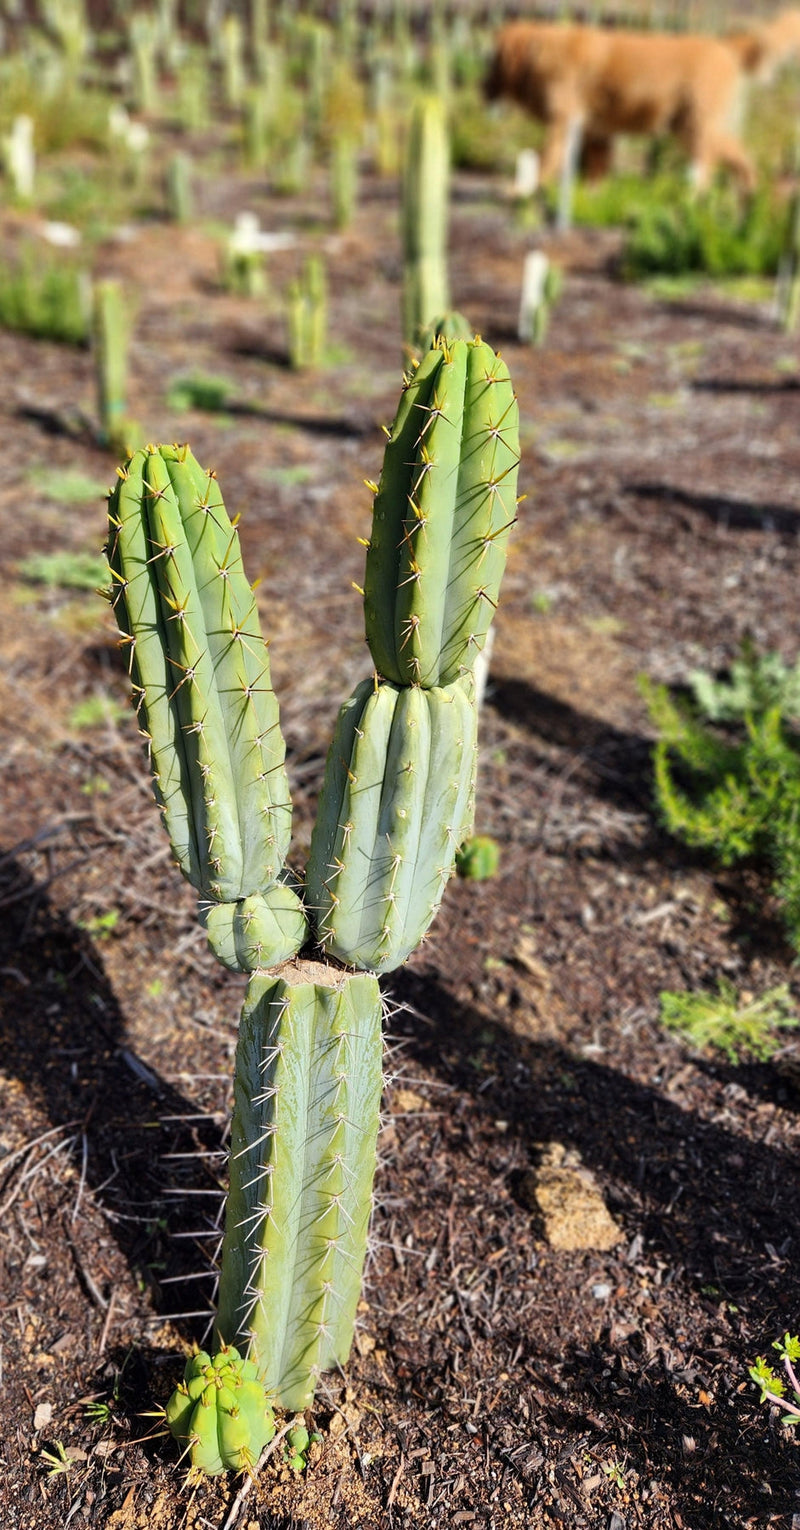 #EC97 EXACT Trichocereus Peruvianus "Lumberjack" Cactus Cuttings